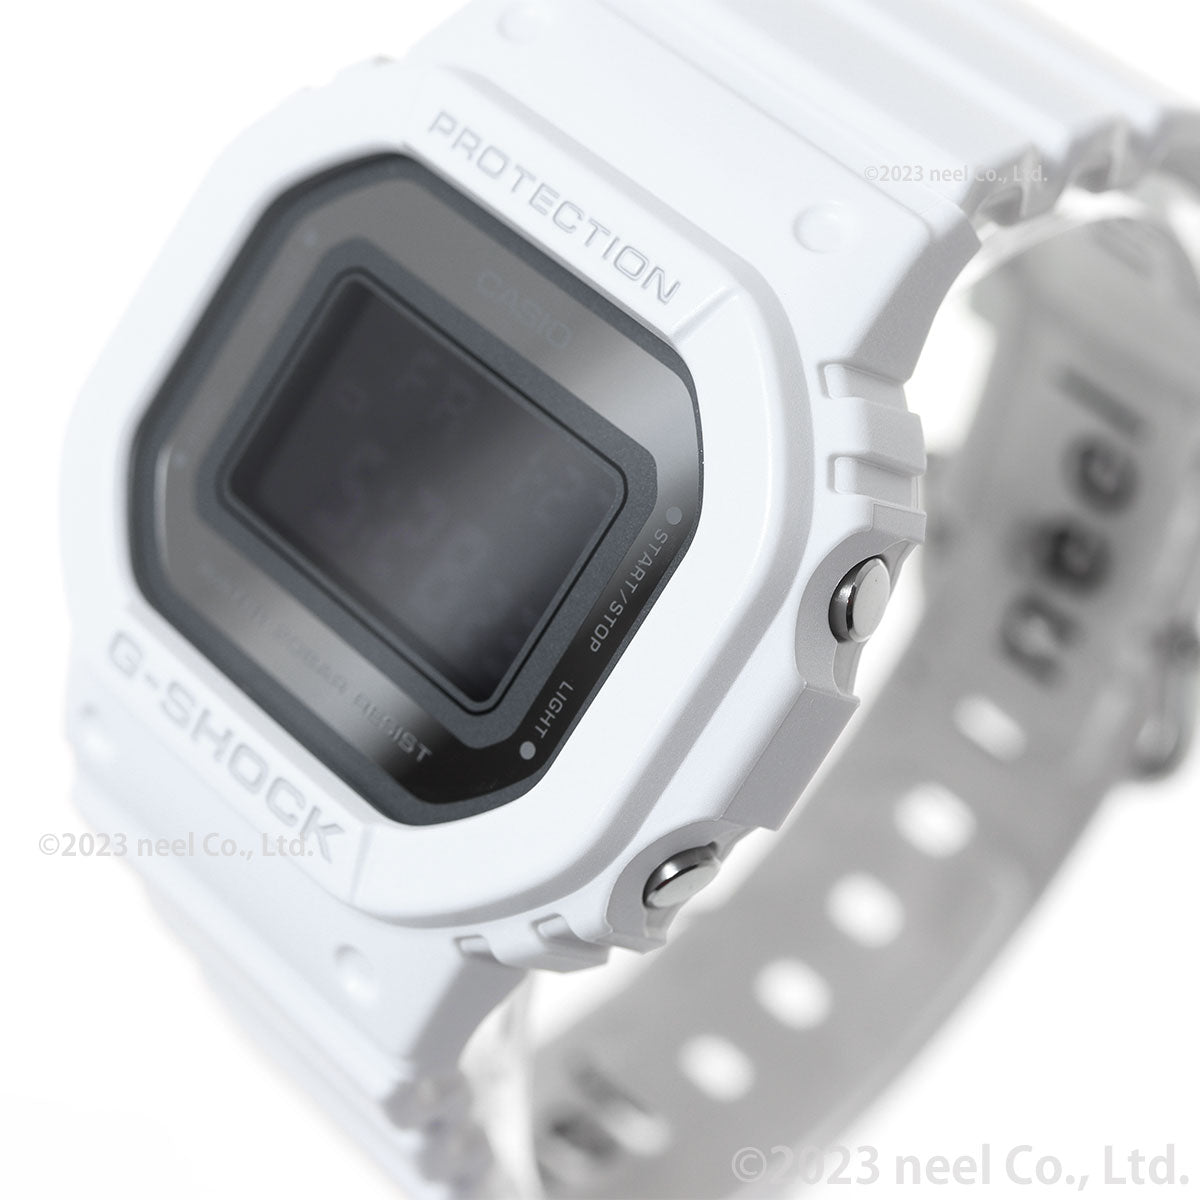 G-SHOCK デジタル カシオ Gショック CASIO デジタル 腕時計 メンズ レディース GMD-S5600-7JF DW-5600 小型化・薄型化モデル